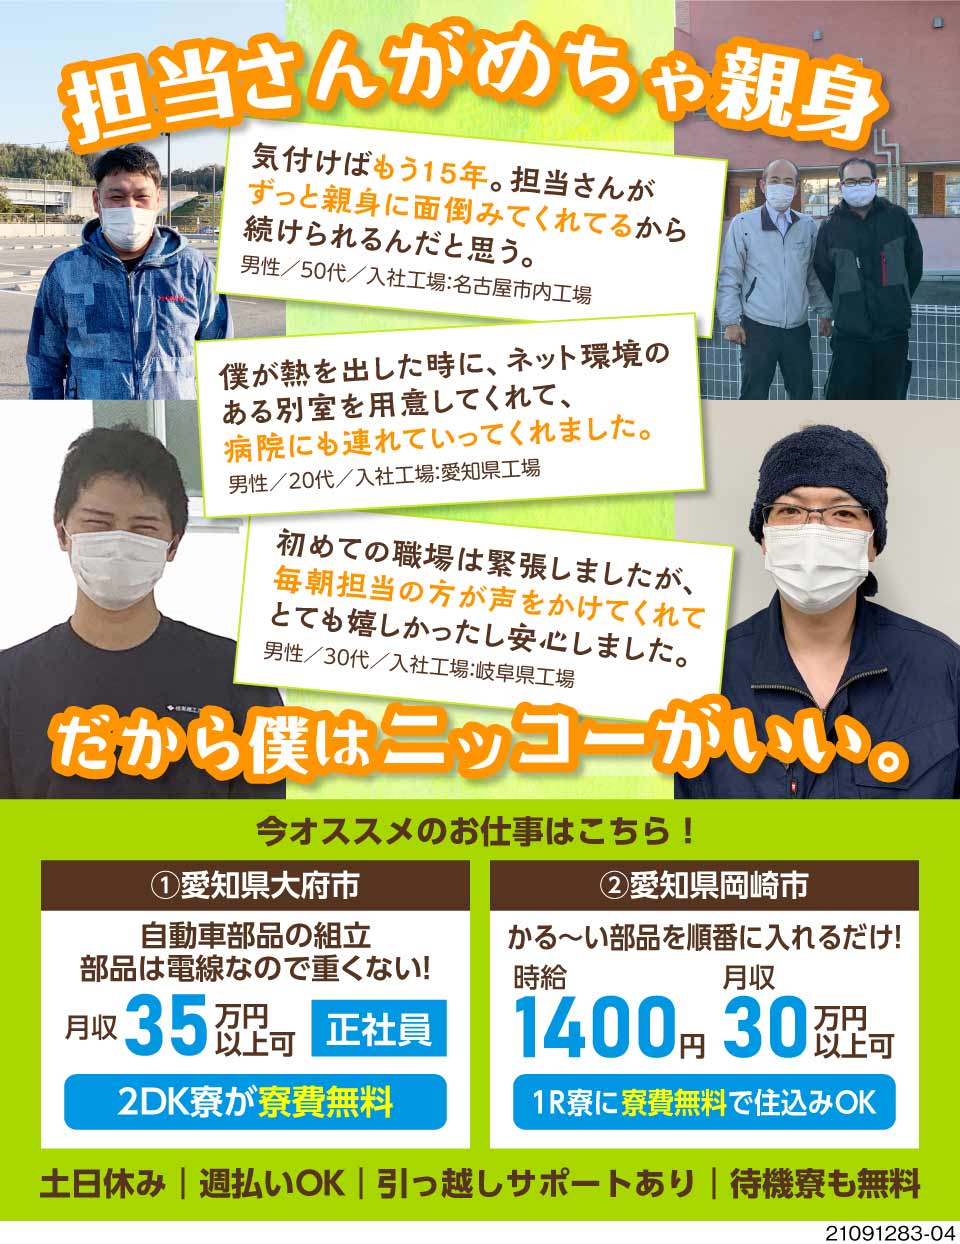 株式会社ニッコー 愛知県大府市 ニッコーの求職者の声集めました 工場求人のジョブコンプラス